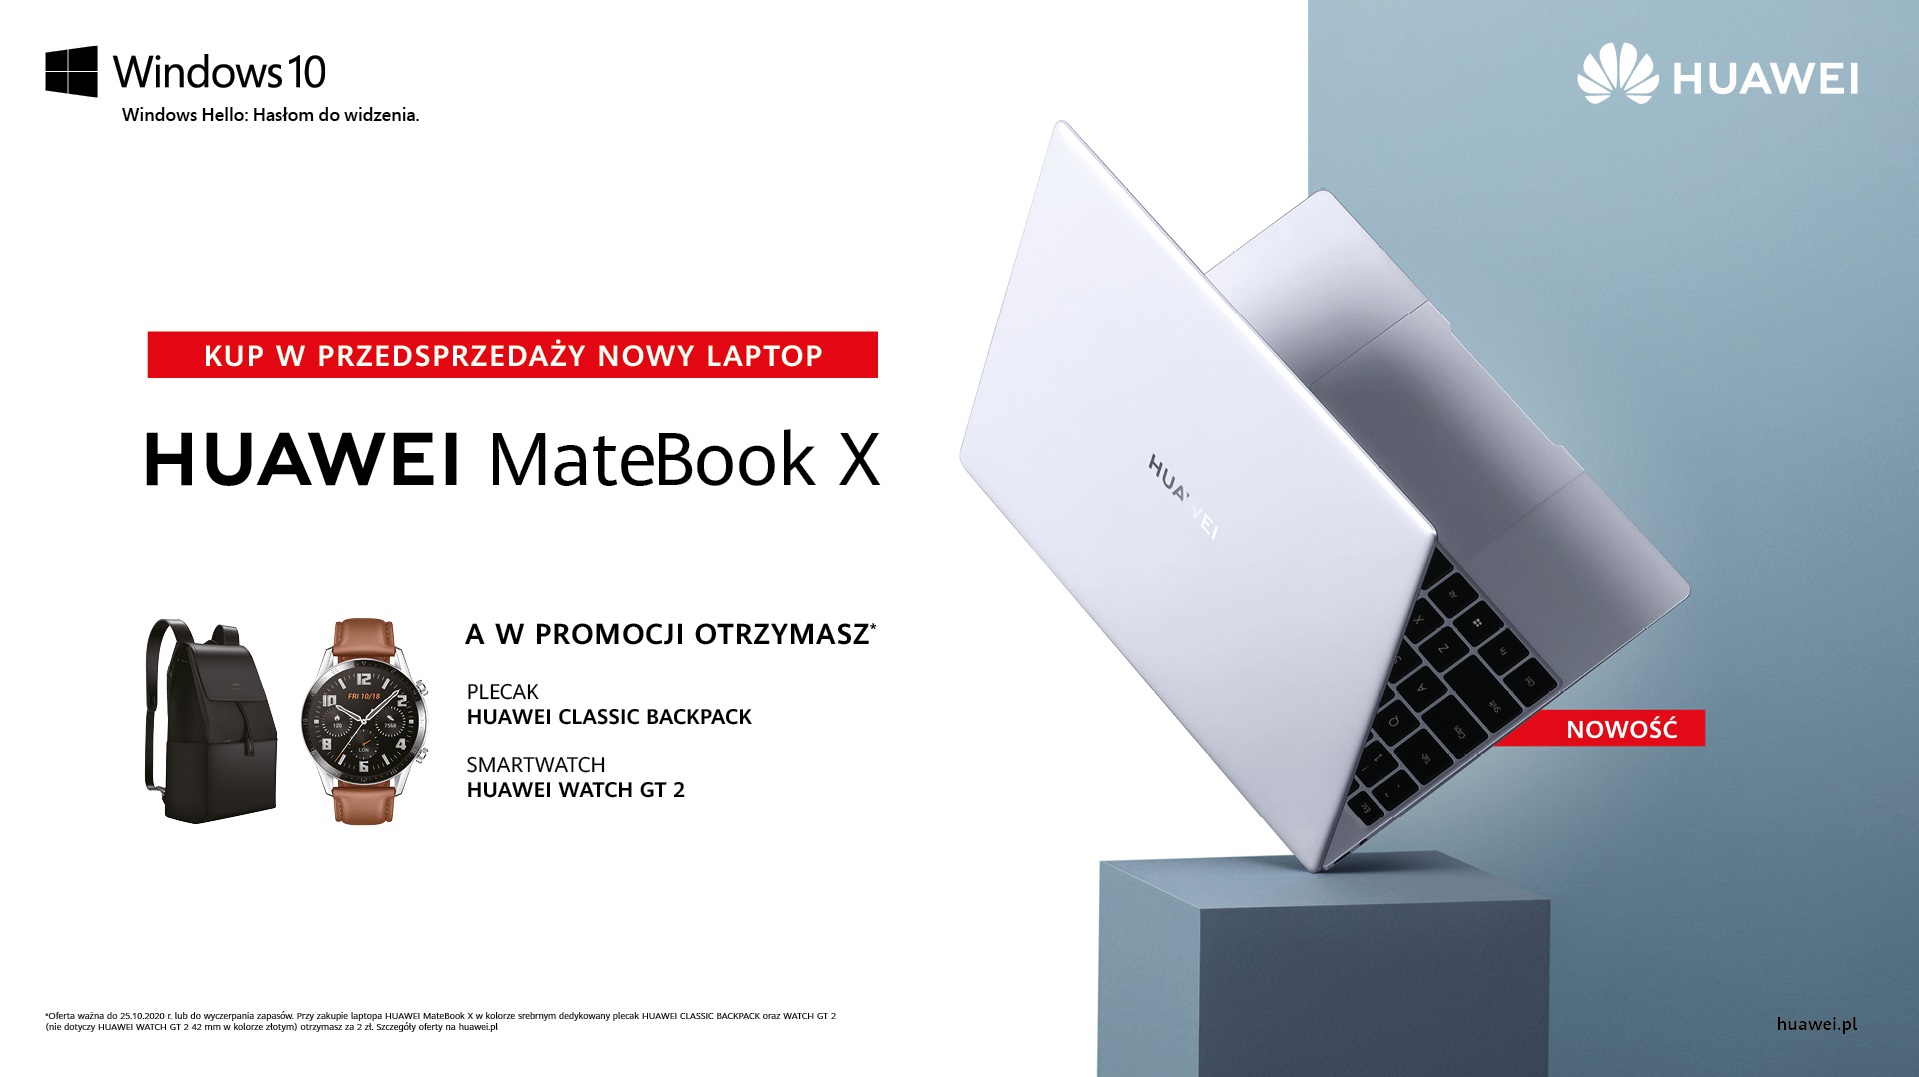 MateBook X   oferta w przedsprzedaÅ¼y